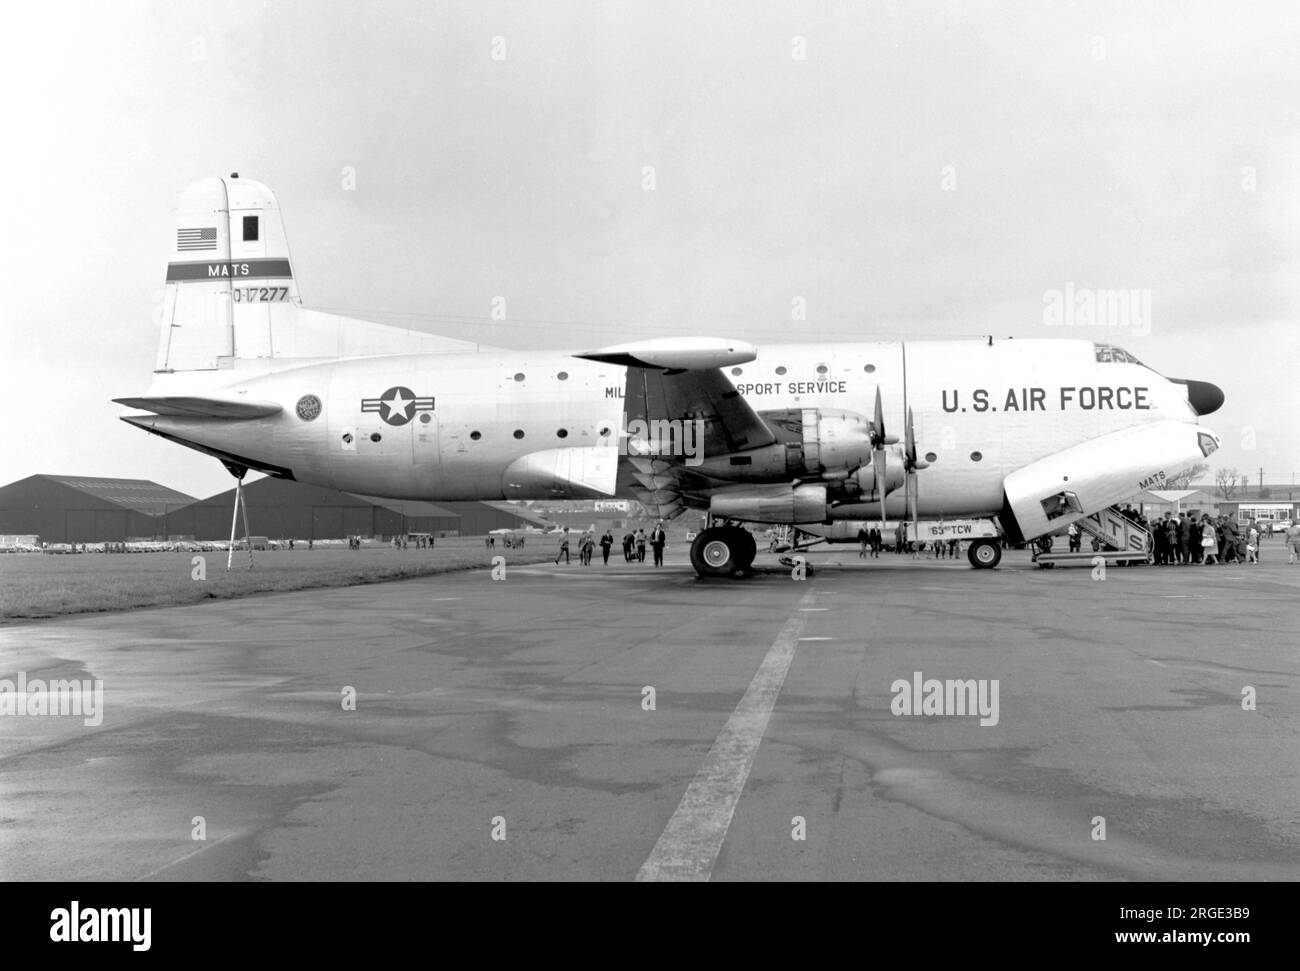 United States Air Force â€“ Douglas C-124C-DL Globemaster II 51-7277 (msn 43728), de la 63e Escadre de transport de troupes à l’aéroport de Prestwick le 22 mai 1965. (Marqué comme O-17277 â€“ O=Obsolète, souvent utilisé pour les avions plus anciens dans l'inventaire de l'USAF dans les années 50 et 60) Banque D'Images